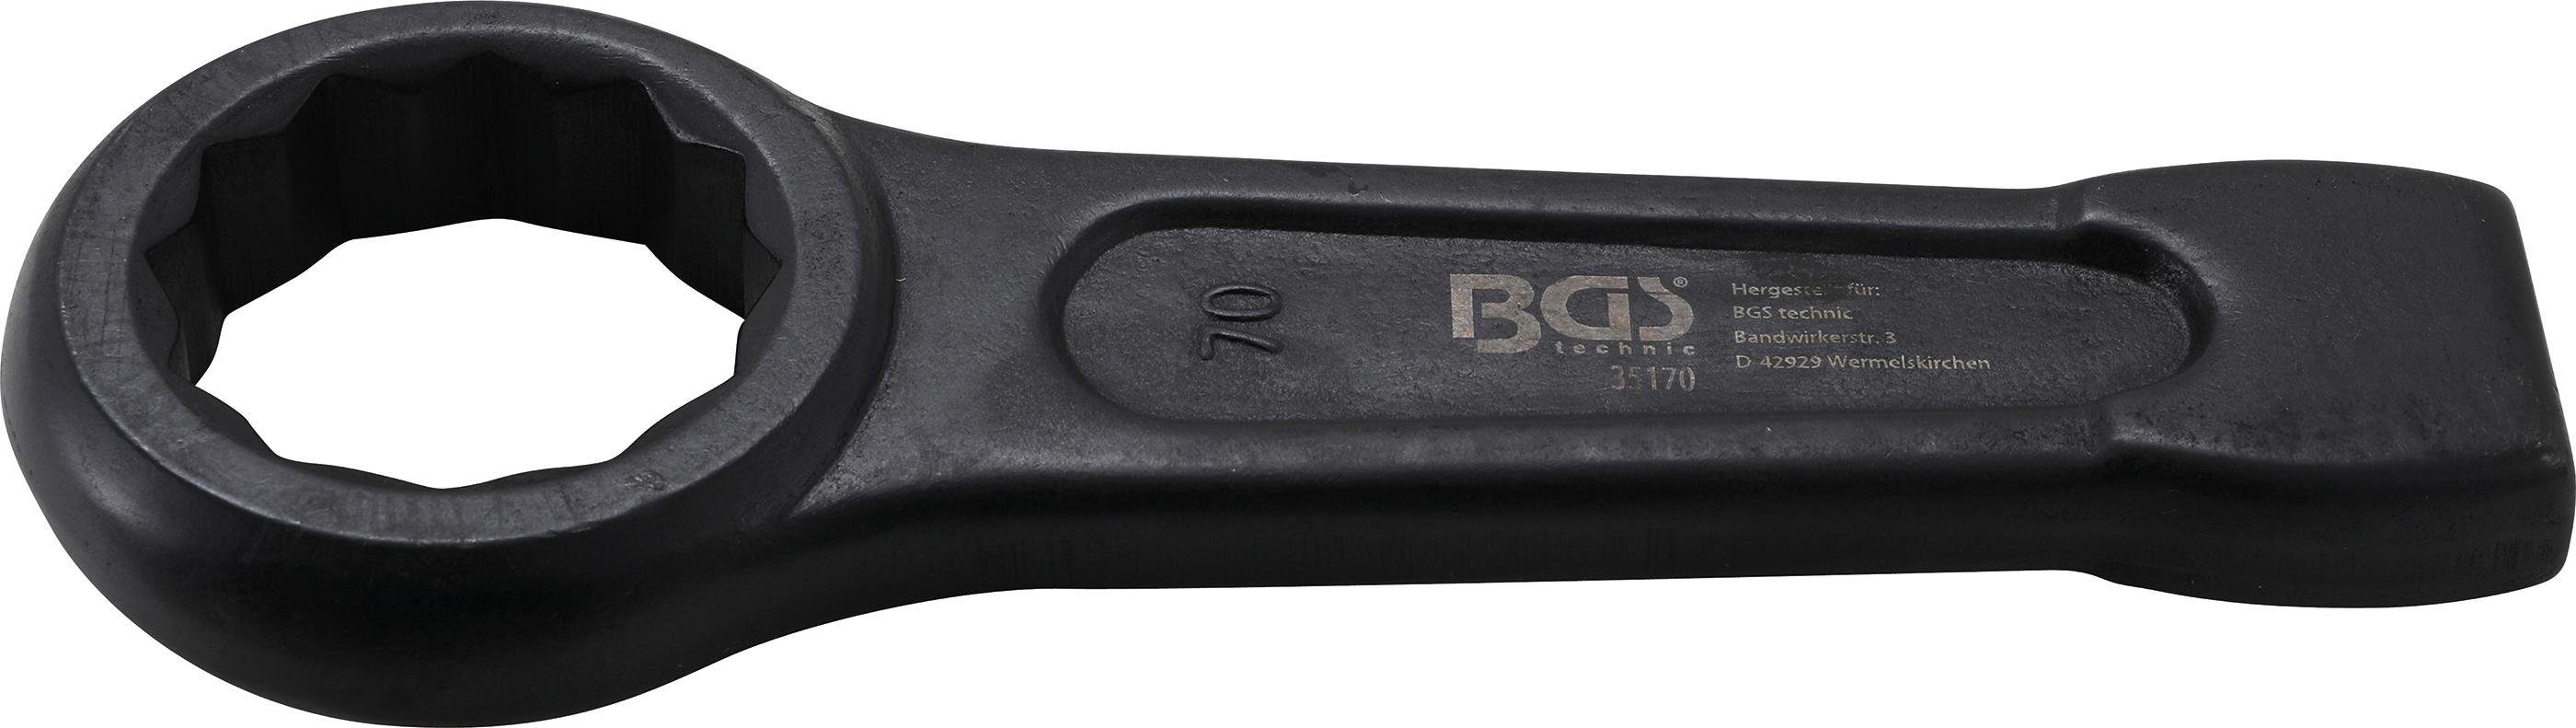 BGS technic Ringschlüssel Schlag-Ringschlüssel, SW 70 mm